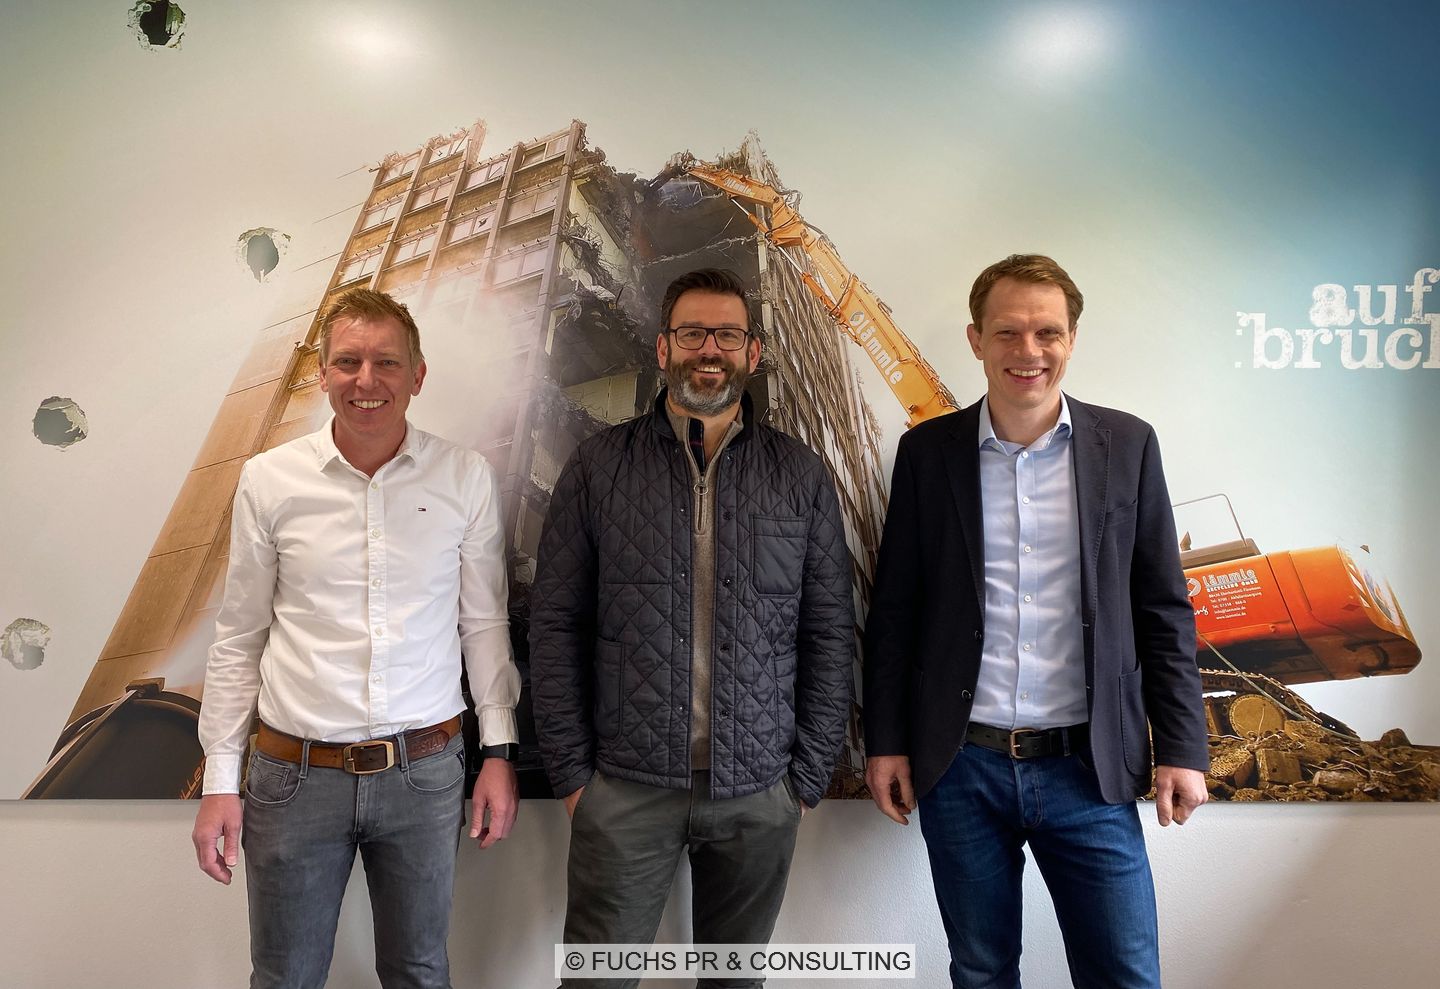 Zu sehen sind: Tobias Kuhn (KS Engineering GmbH), Stefan Lämmle (Lämmle Recycling GmbH) und Cassian Gruber (Geiger Unternehmensgruppe) vor einem Plakat eines abgebrochenen Gebäudes.